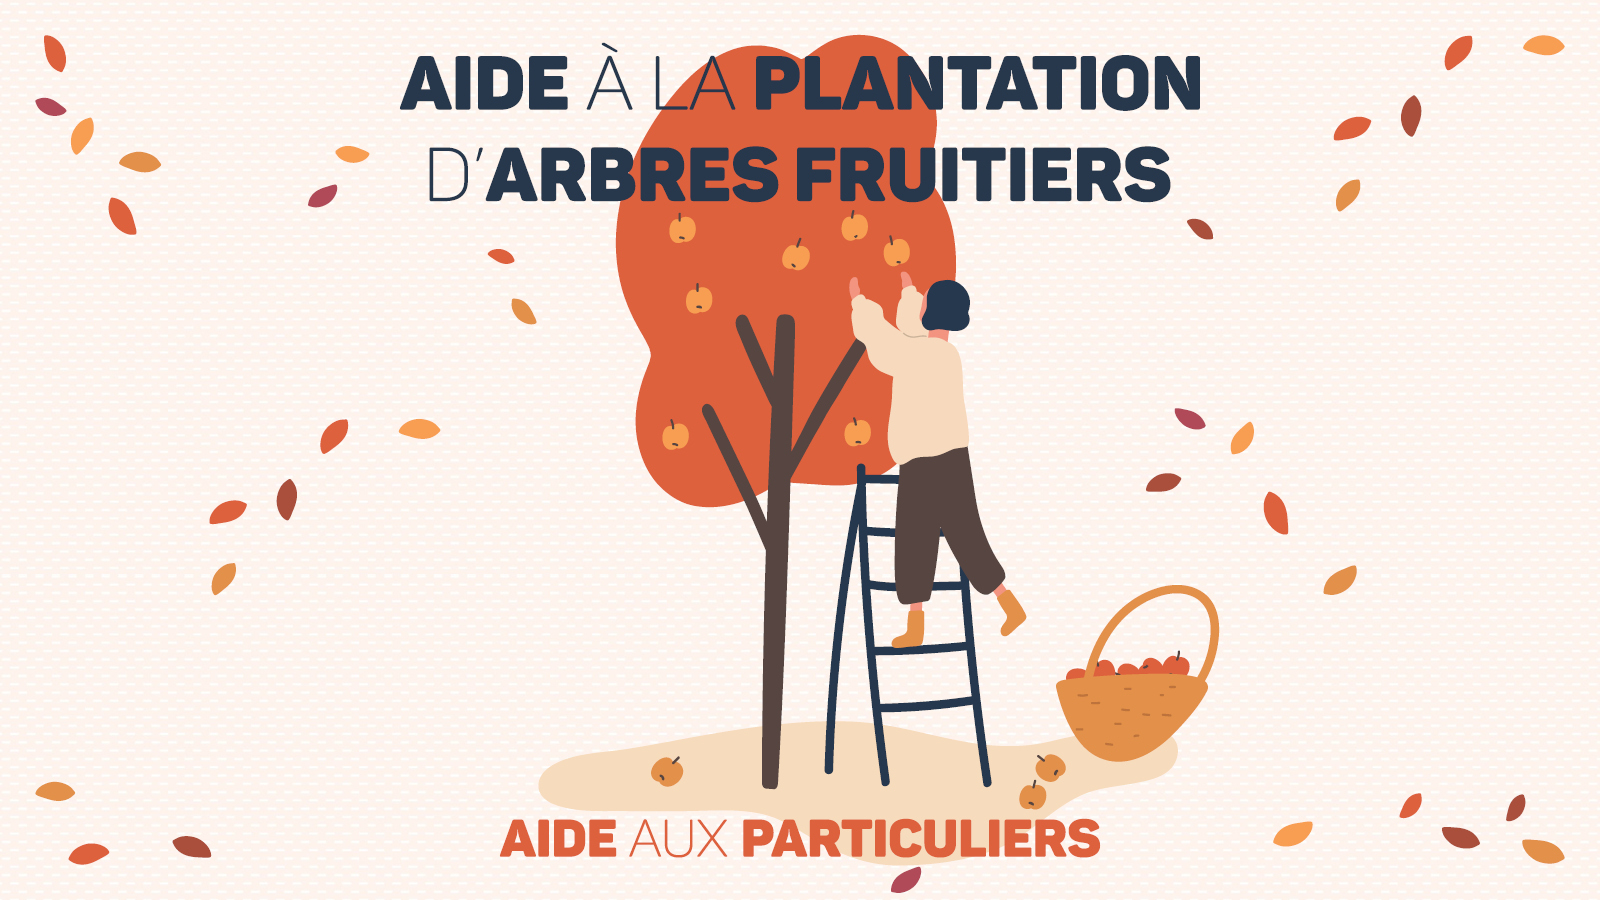 Aide à la plantation d'arbres fruitiers